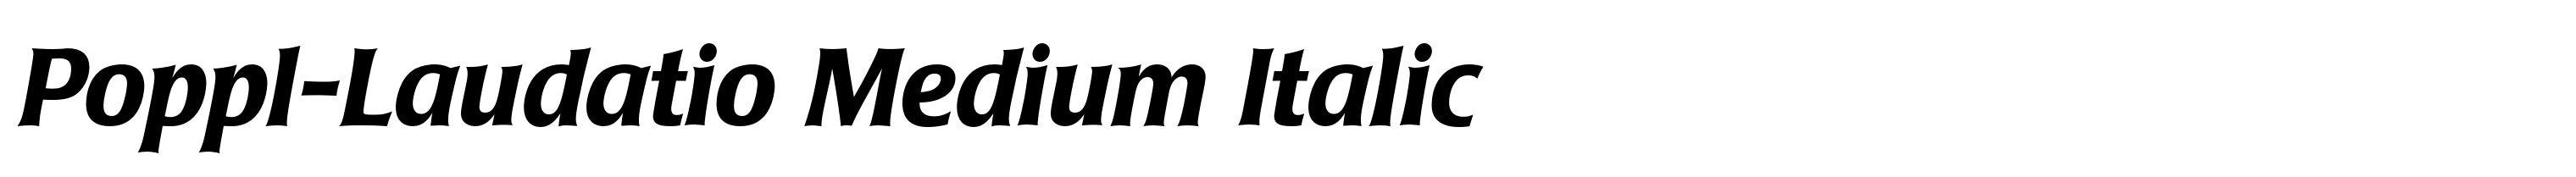 Poppl-Laudatio Medium Italic